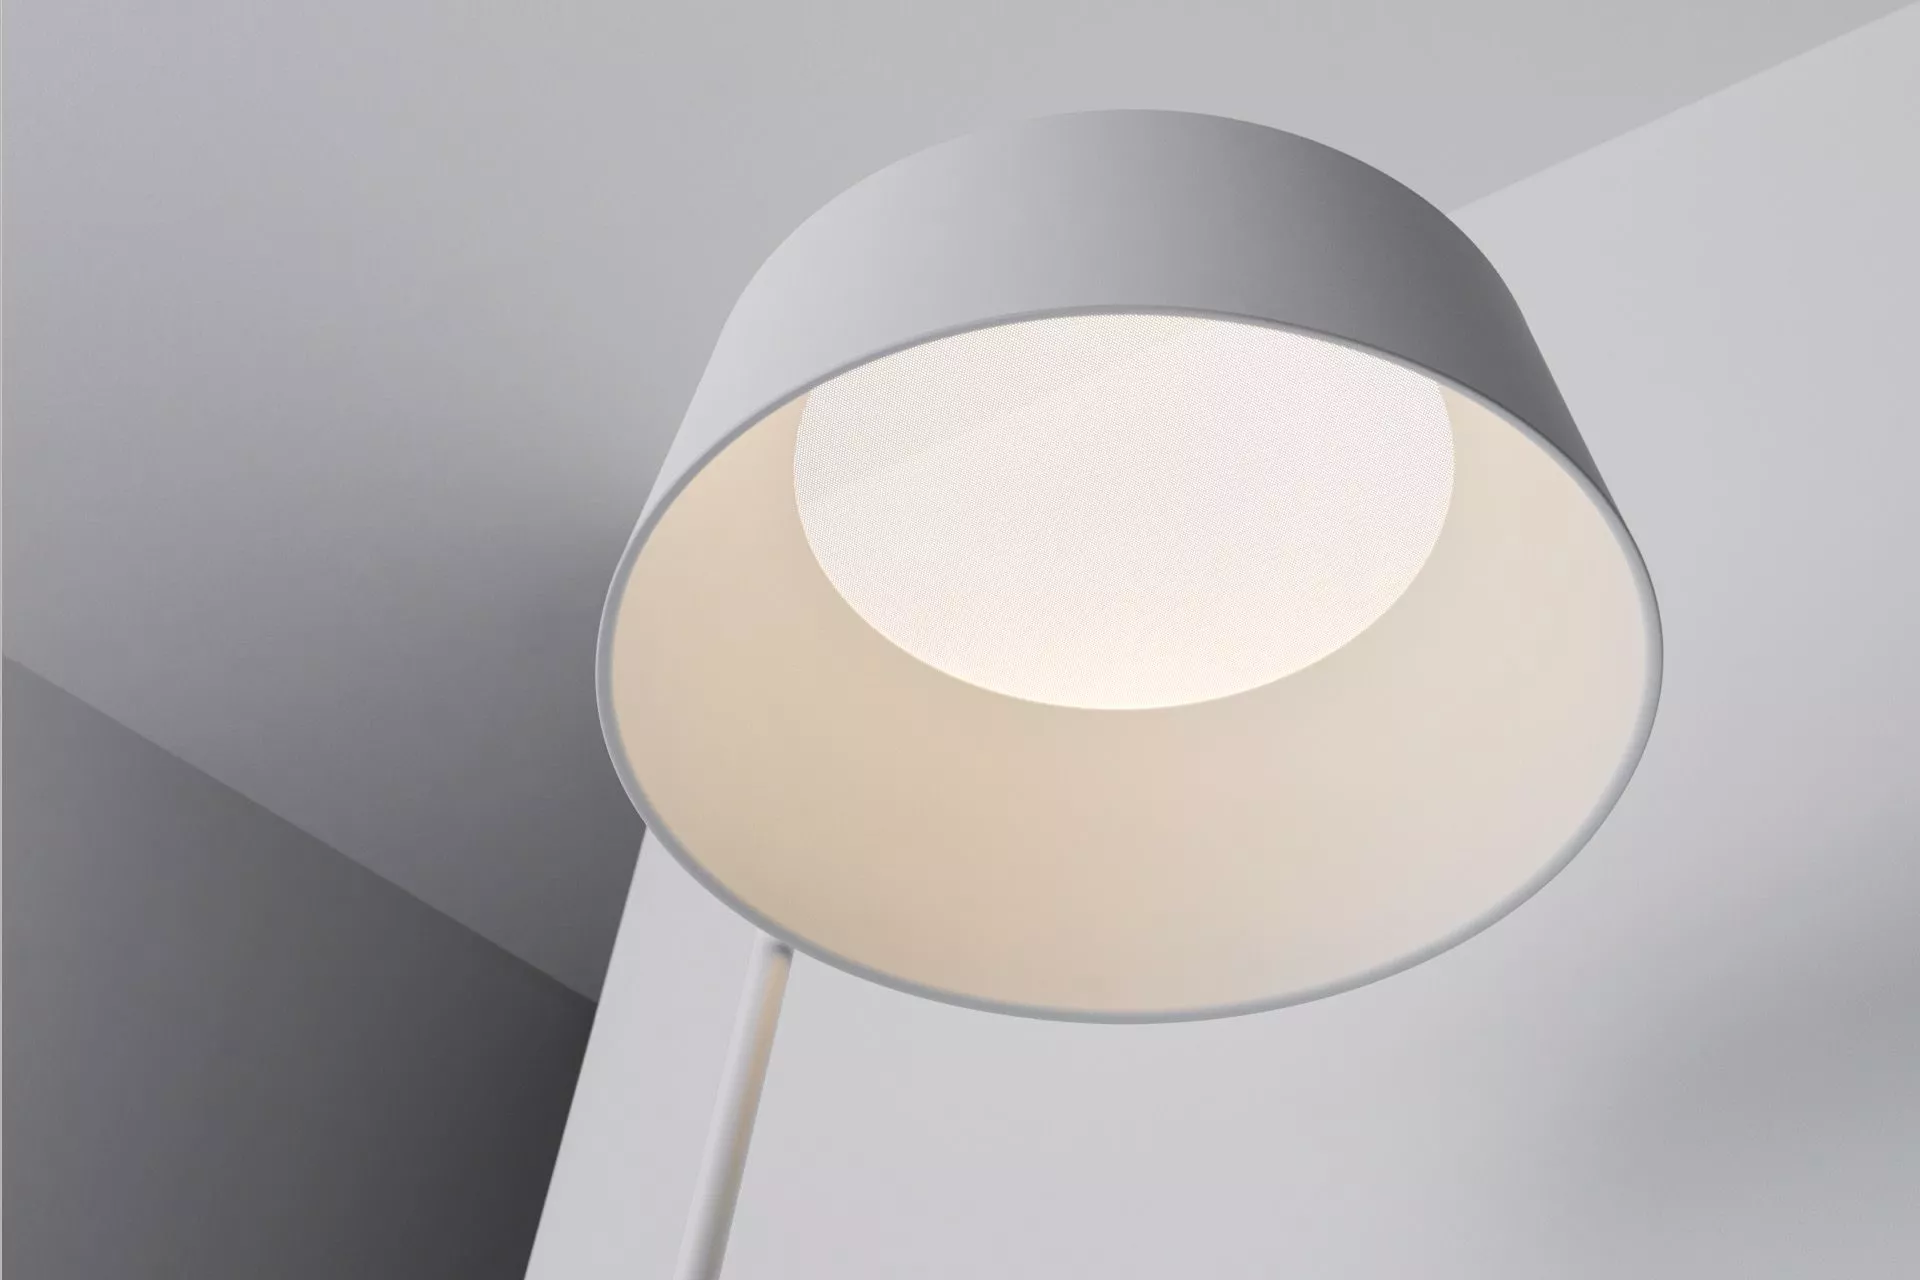 Ma&de oxygen fl2 regular floor lamp led light moern design white-finish  lampshade - 8097